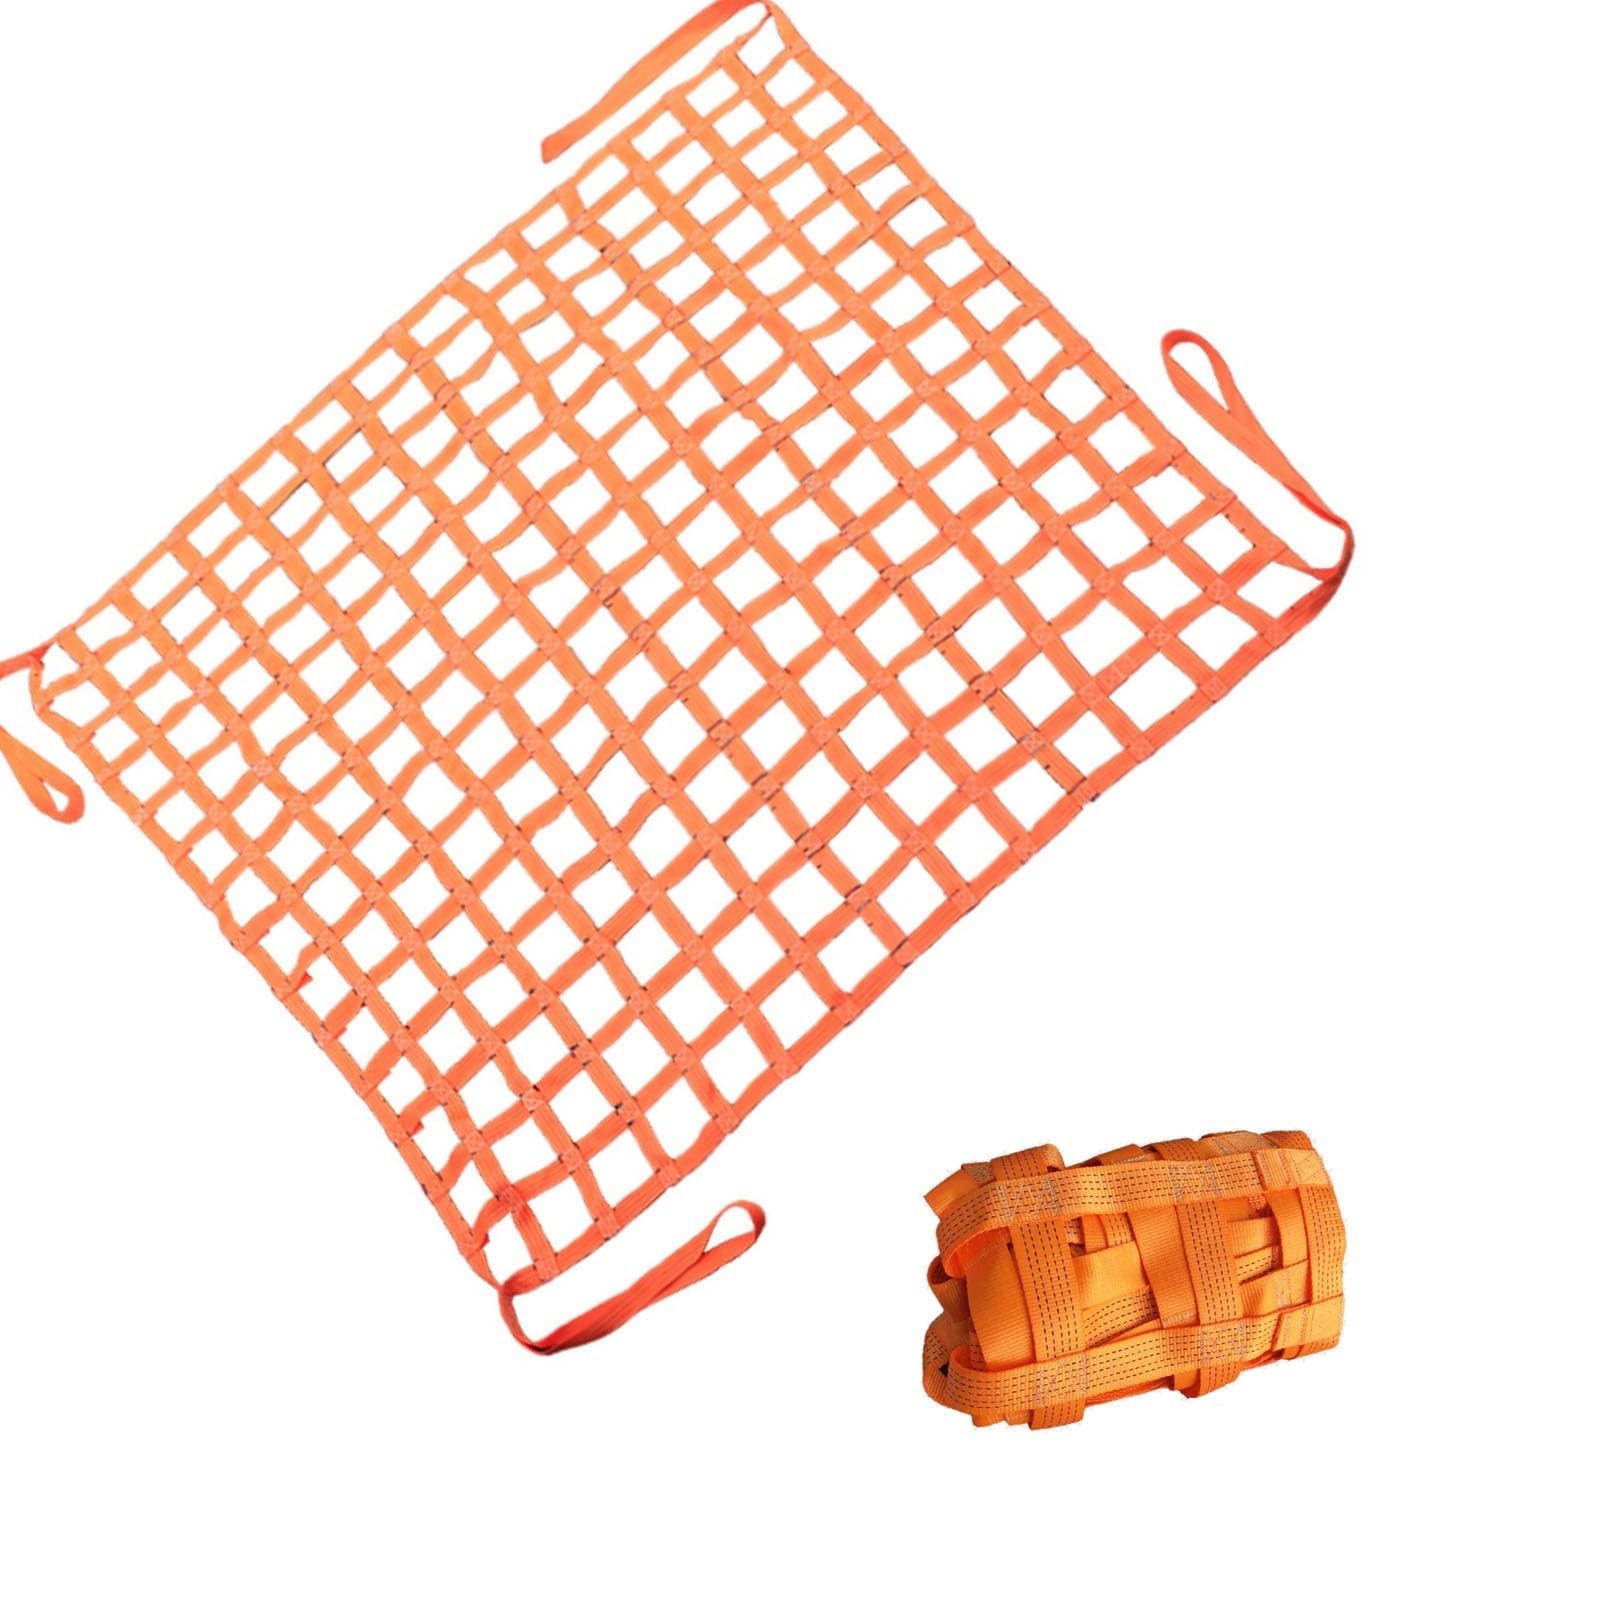 Cargo Hebenetz – Polyester Cargo Hanging Net, Sling Net, Load 0.3-3.5T Lifting Bag, Be- und Entladen Garten Hebenetz Gurte Handling Straps, Outdoor Klettern Sicherheitsnetz (One Color 1 X 1M/Me von WYRMB